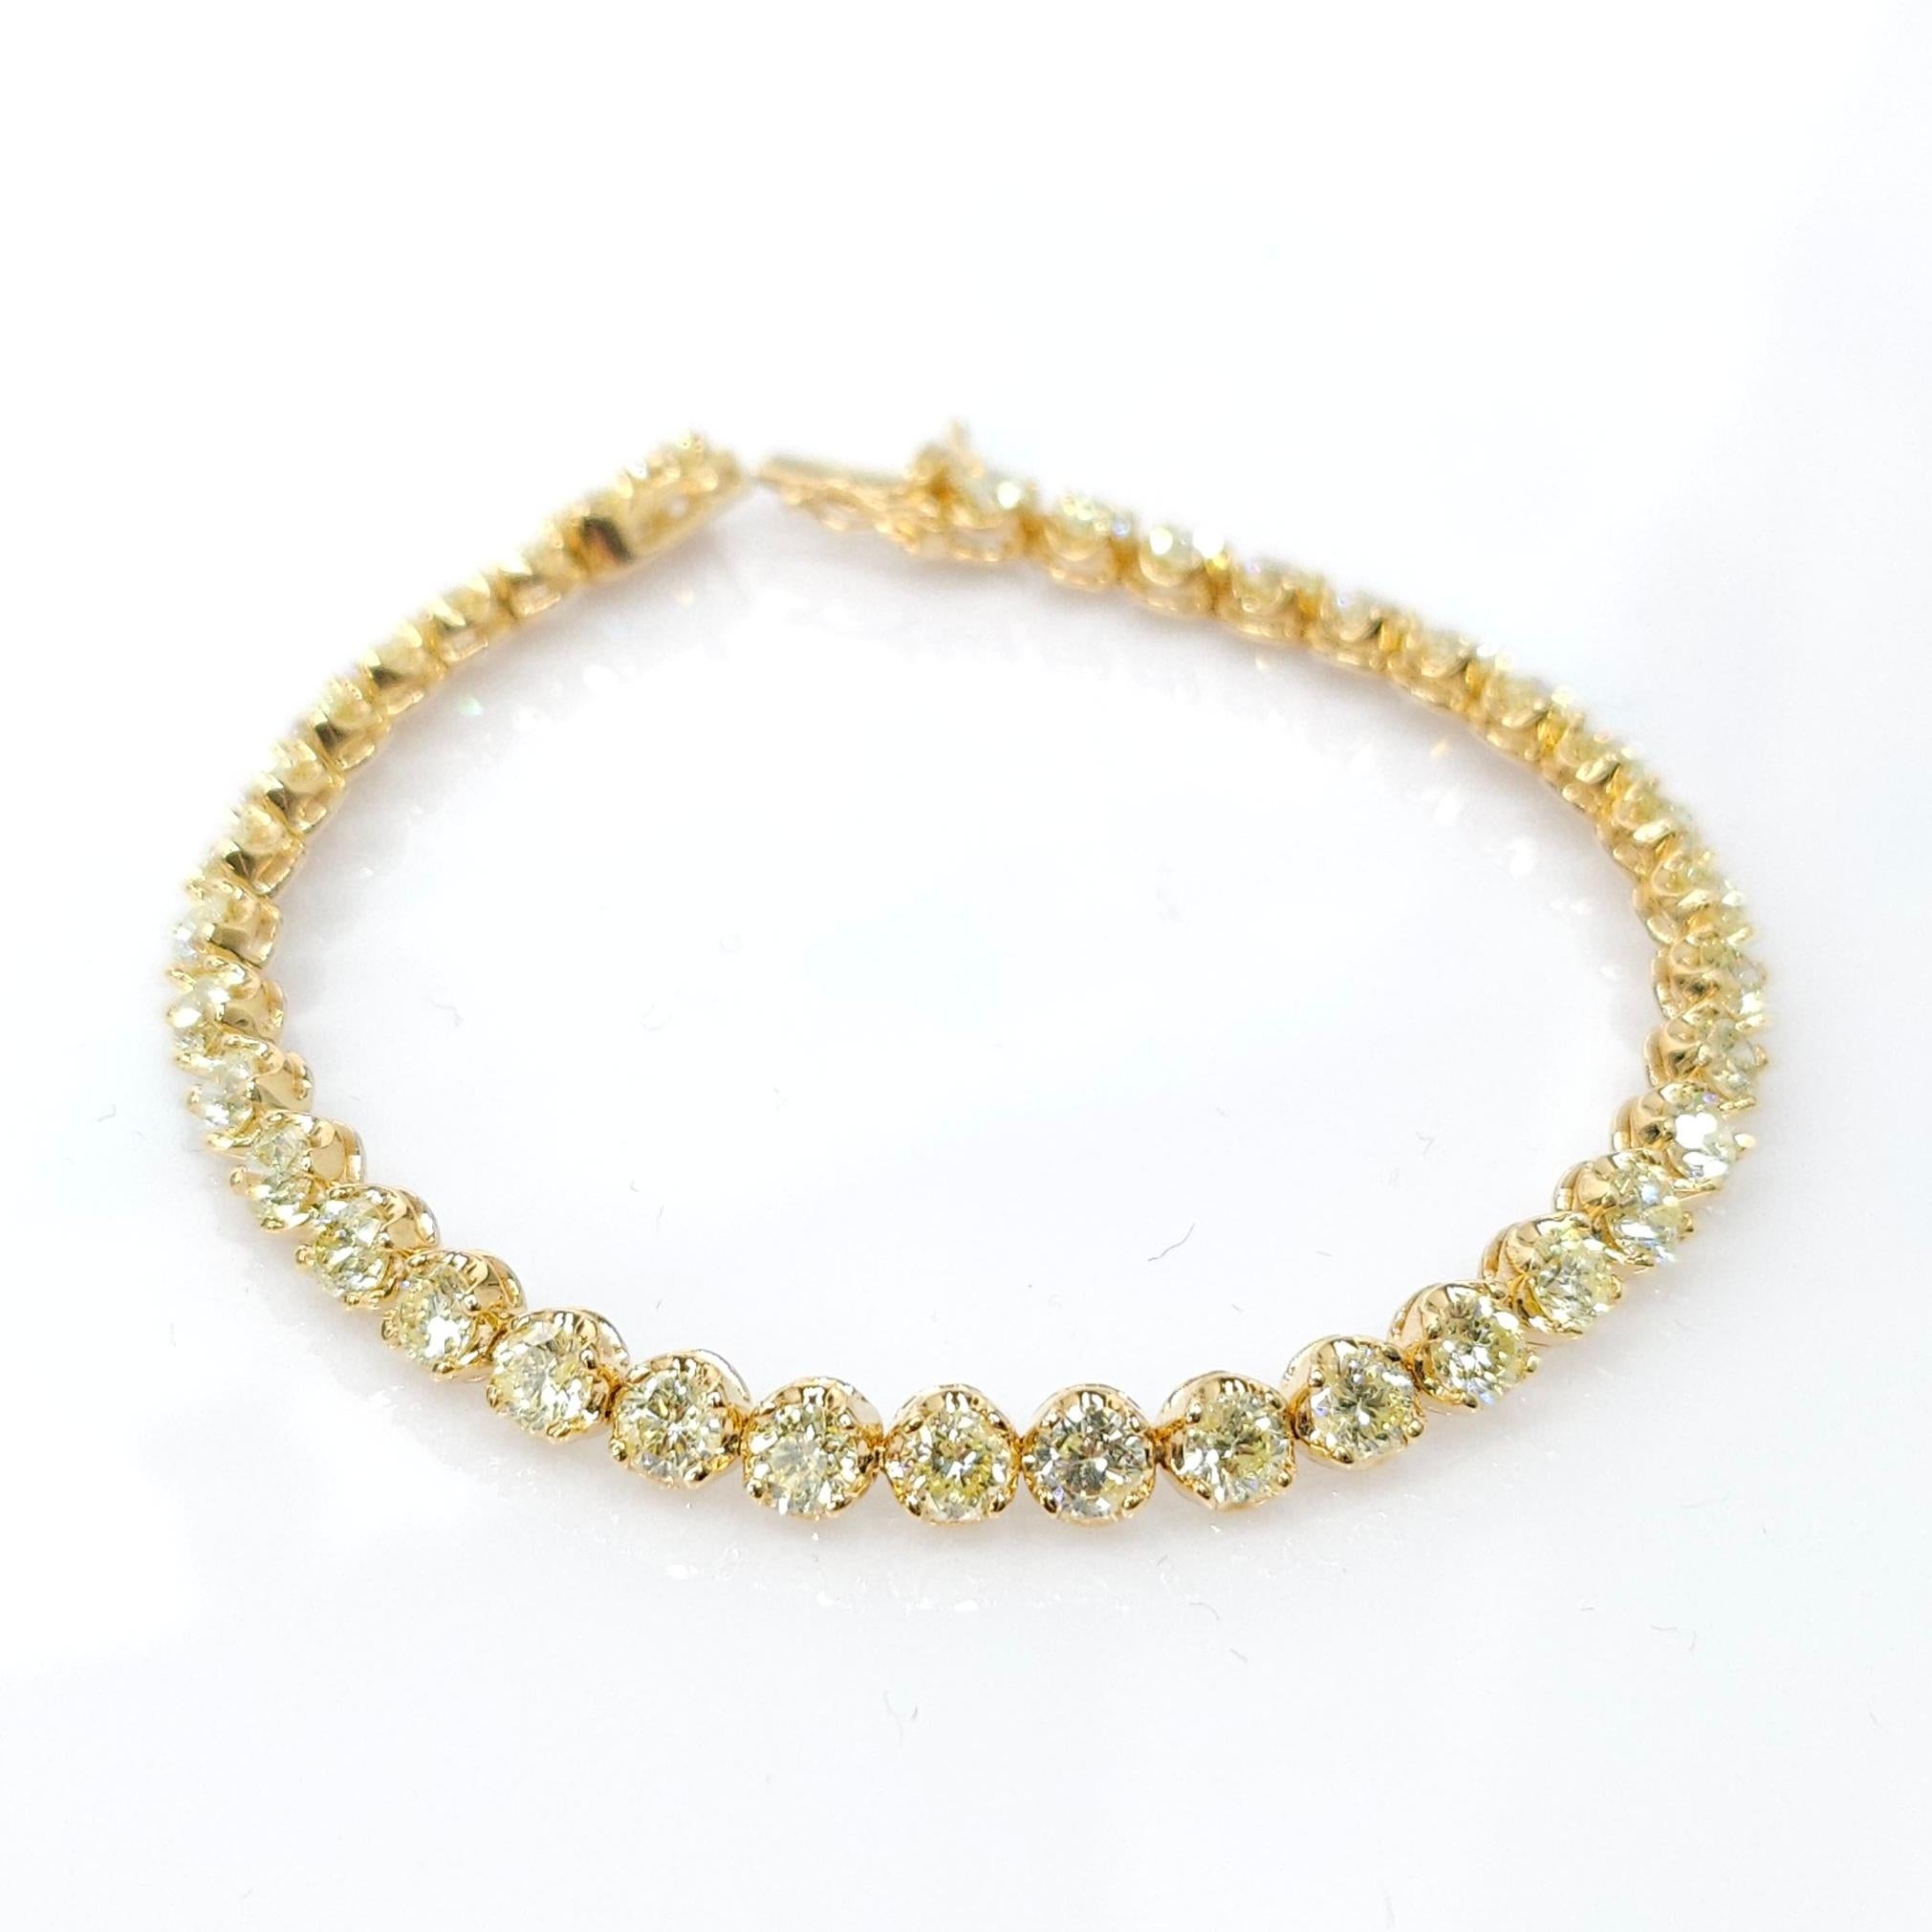 Élevez votre collection de bijoux avec la beauté exquise de ce bracelet de tennis en or jaune 18 carats à diamants ronds totaux de 6,56 carats. Cette pièce étonnante est conçue pour captiver et éblouir par son nouveau design innovant et sa